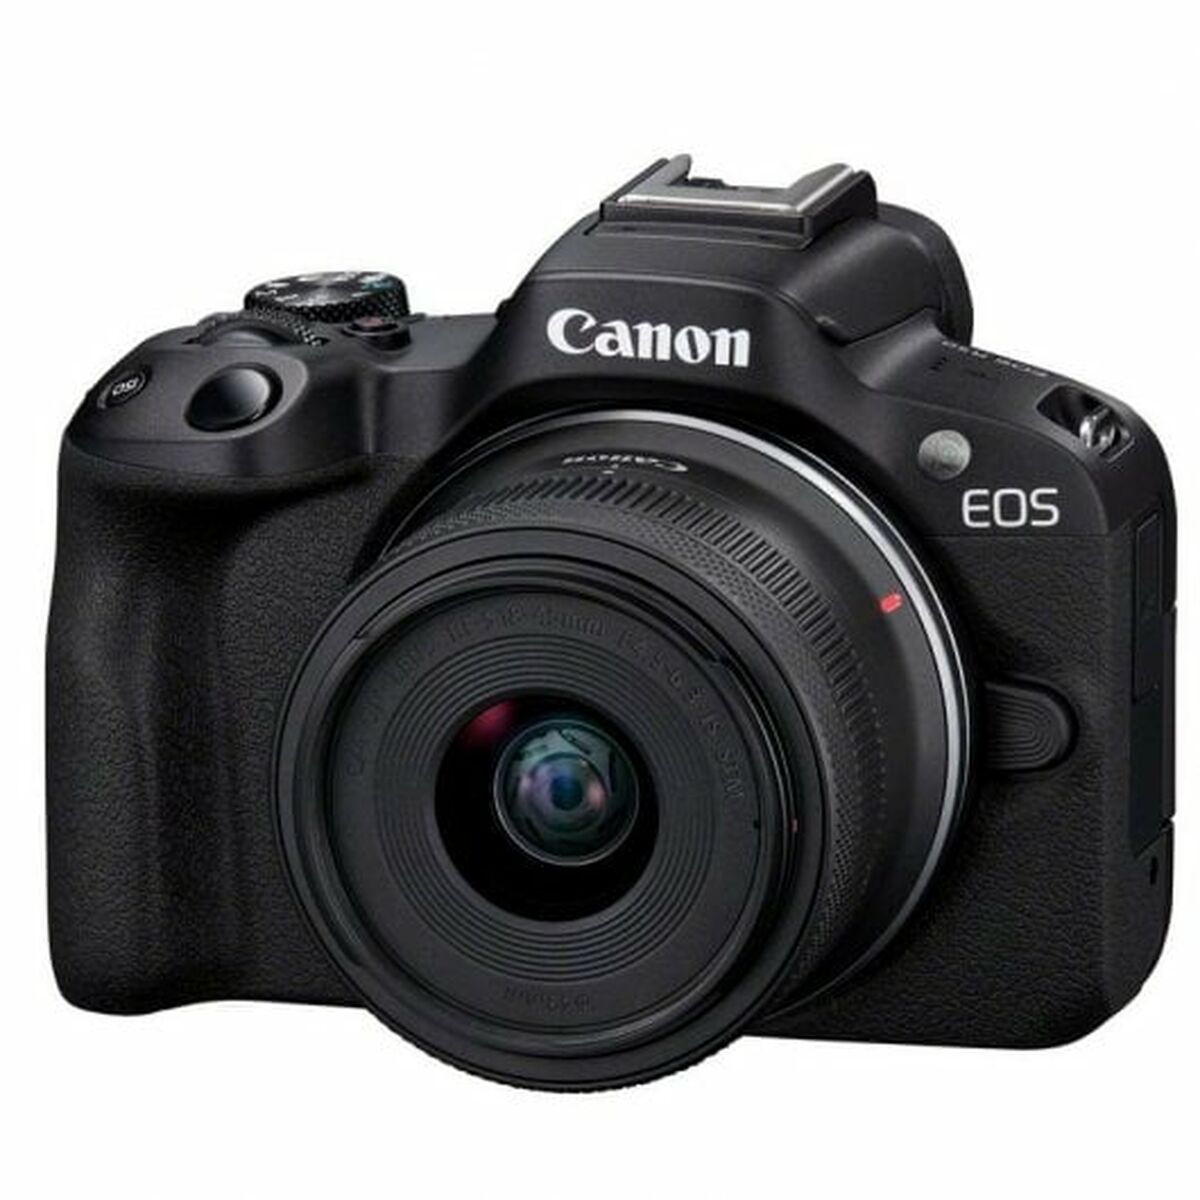 Kamera Reflex Canon 5811C013